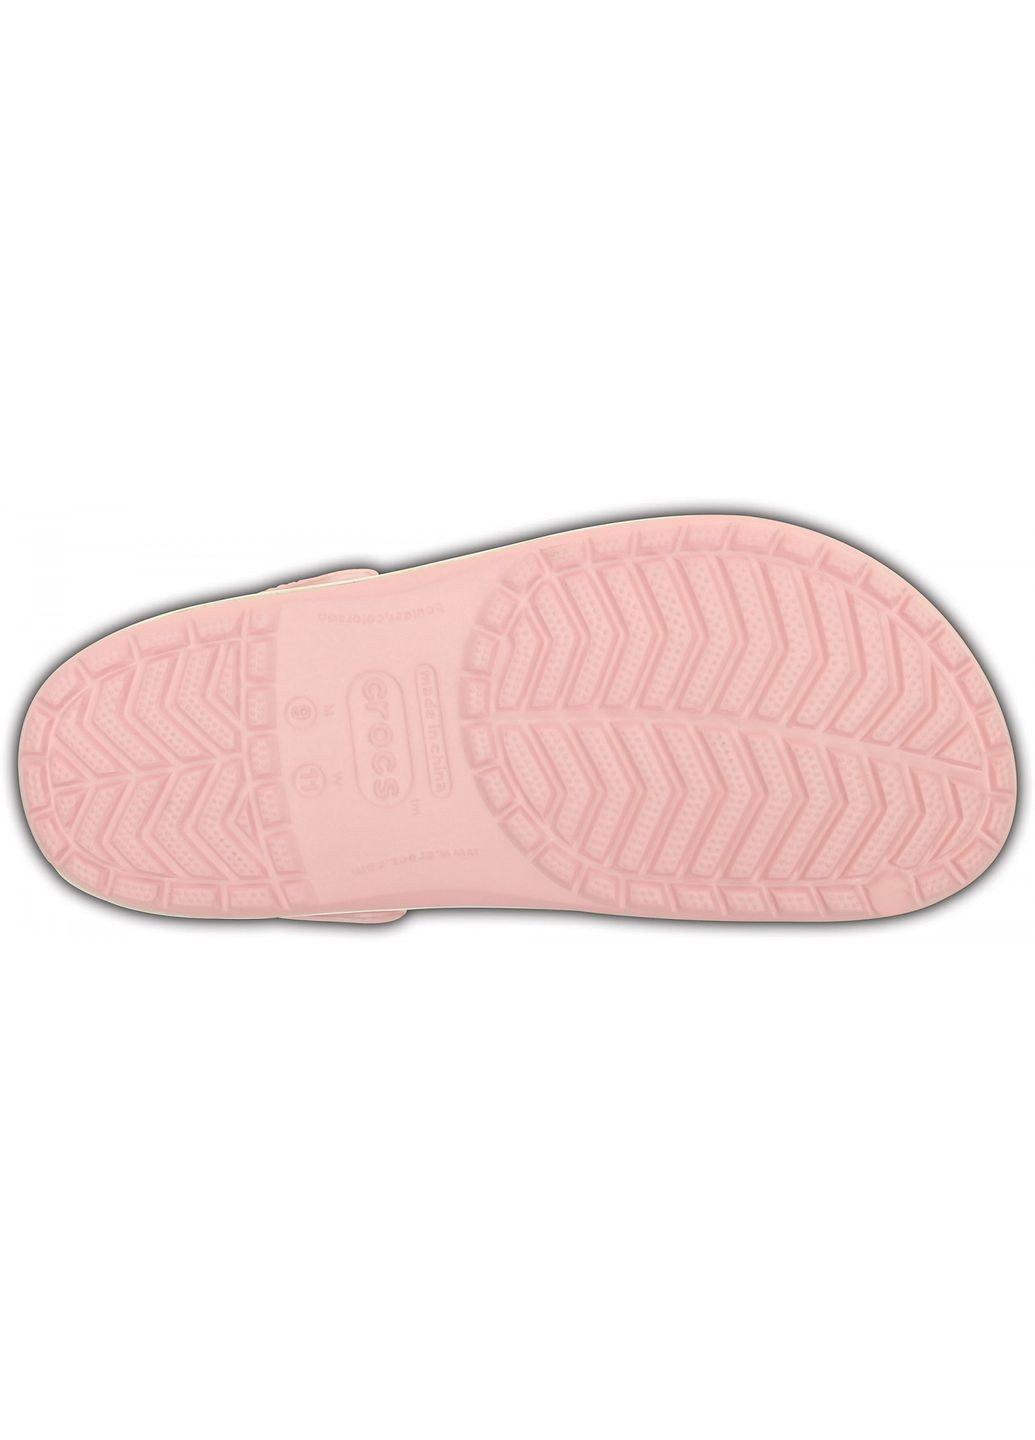 Сабо Crocband Clog Pearl pink M4W6-36-23 см 11016-W Crocs (281158539)